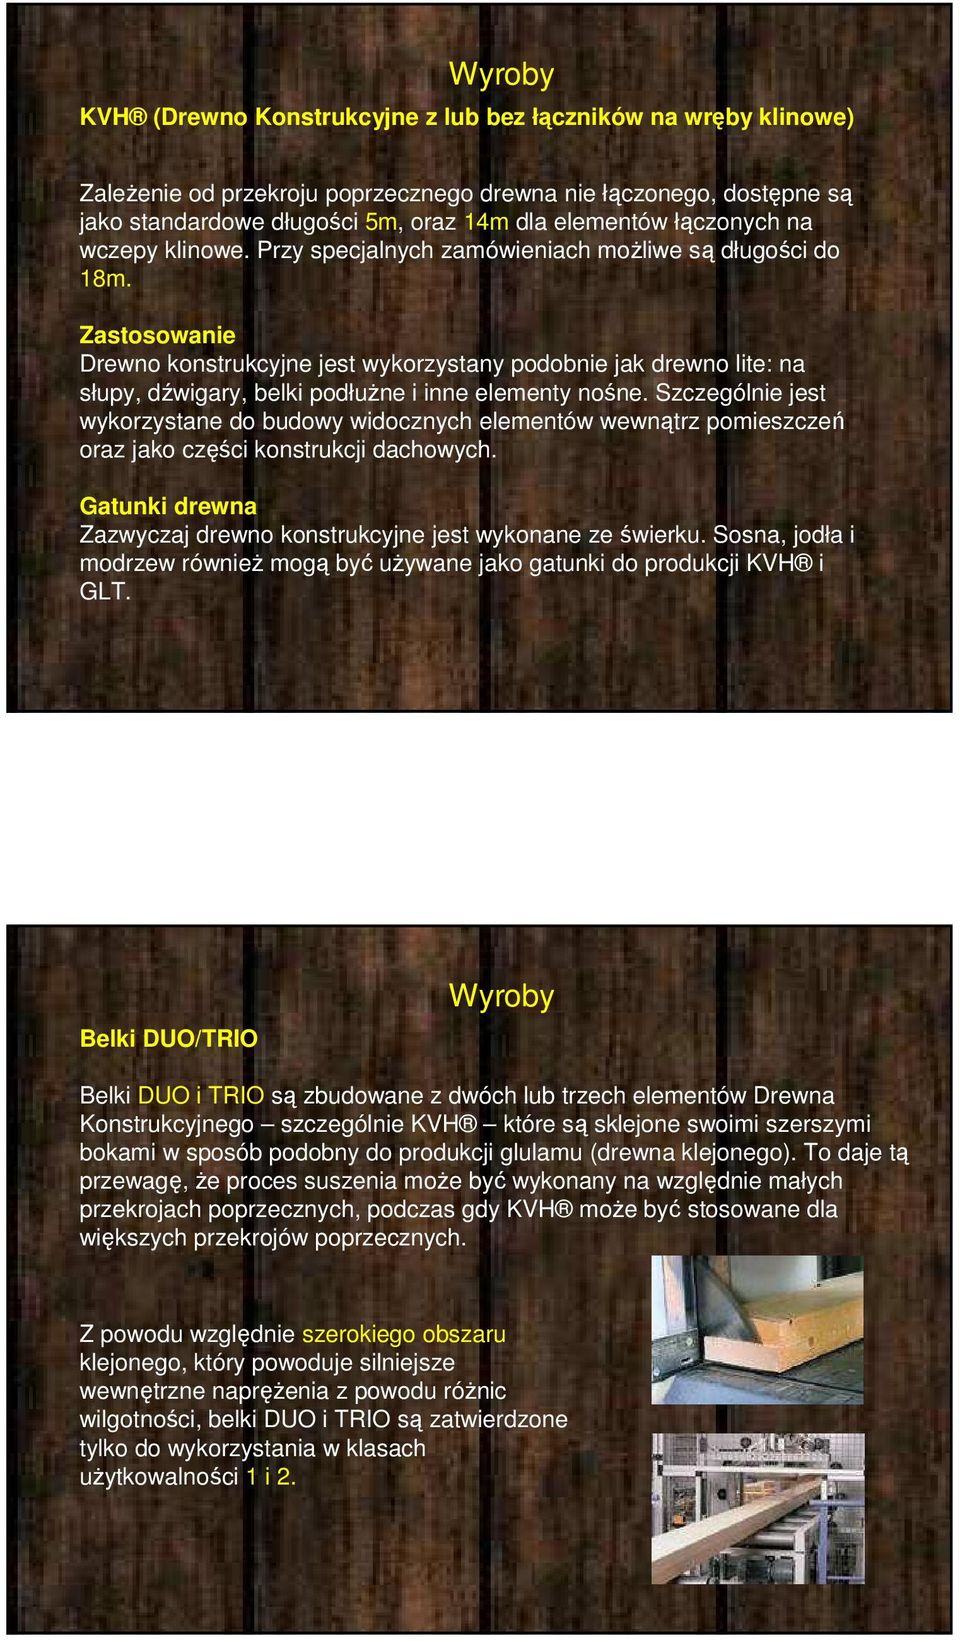 Zastosowanie Drewno konstrukcyjne jest wykorzystany podobnie jak drewno lite: na słupy, dźwigary, belki podłużne i inne elementy nośne.